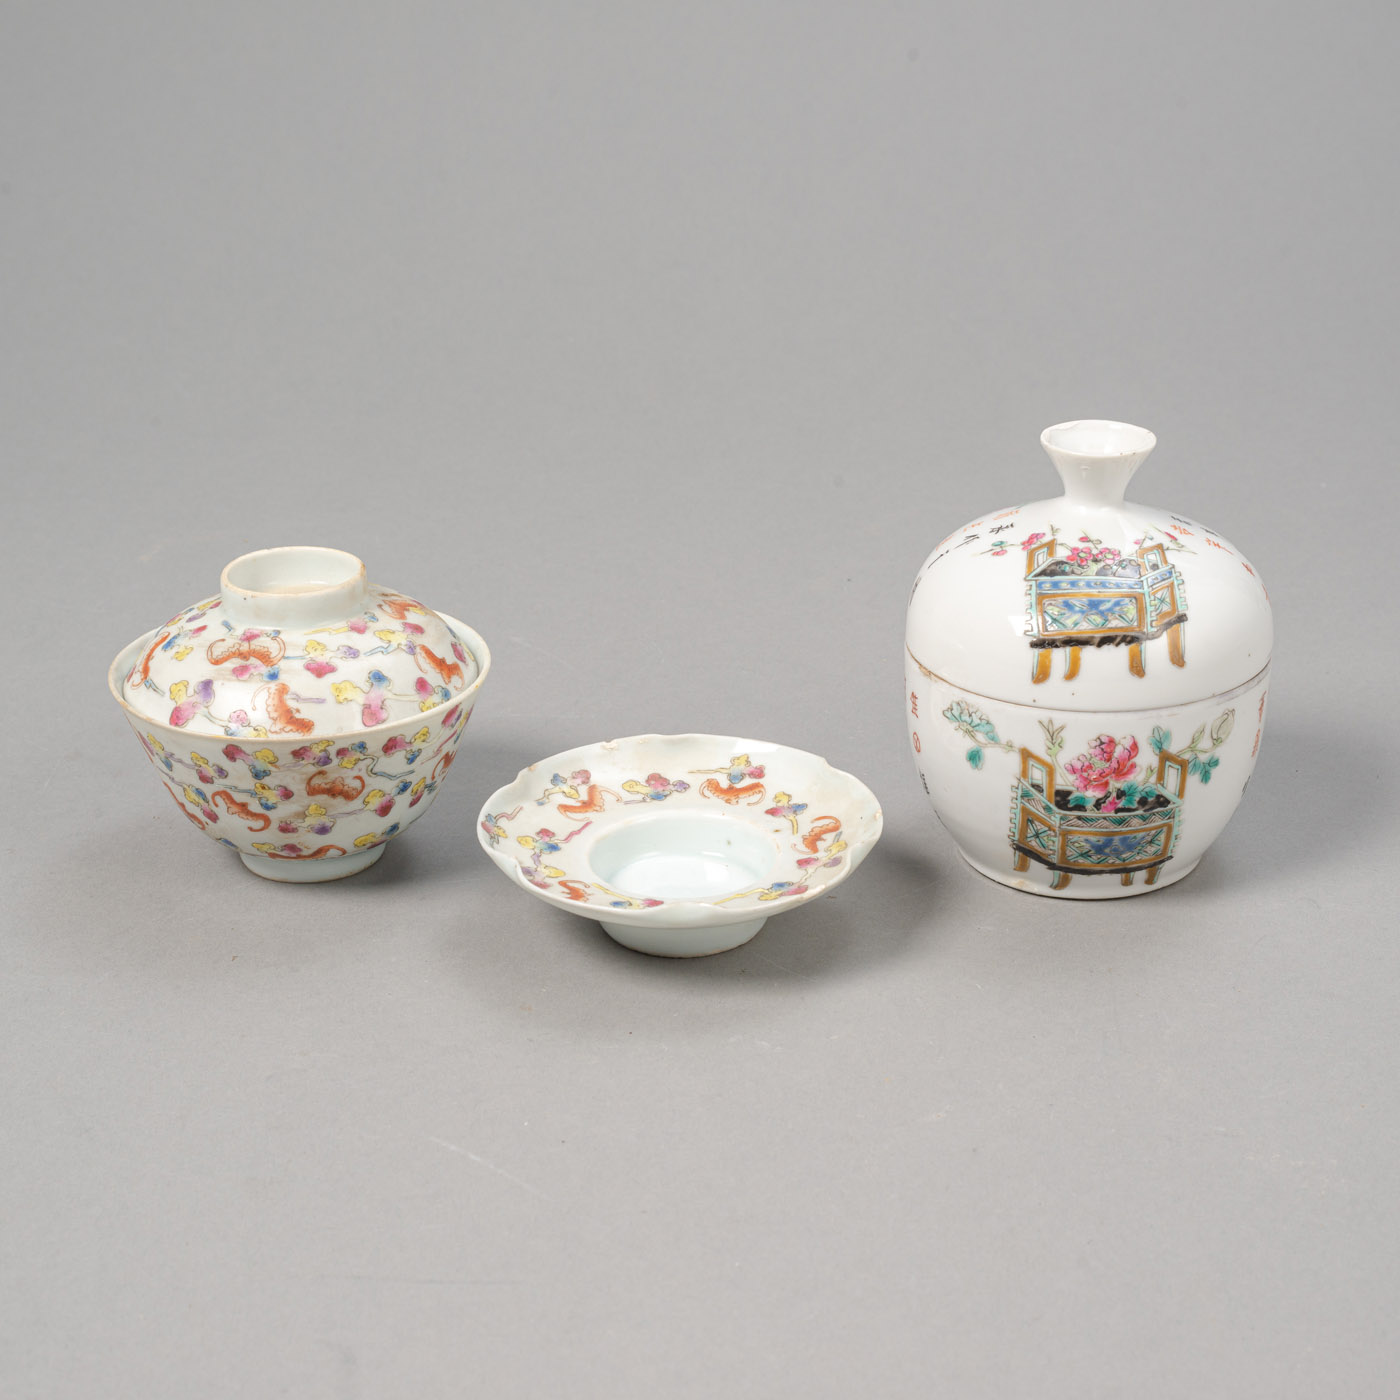 <b>Zwei Deckelschalen aus Porzellan mit 'Famille rose'-Fledermaus- und -Antiquitätendekor</b>